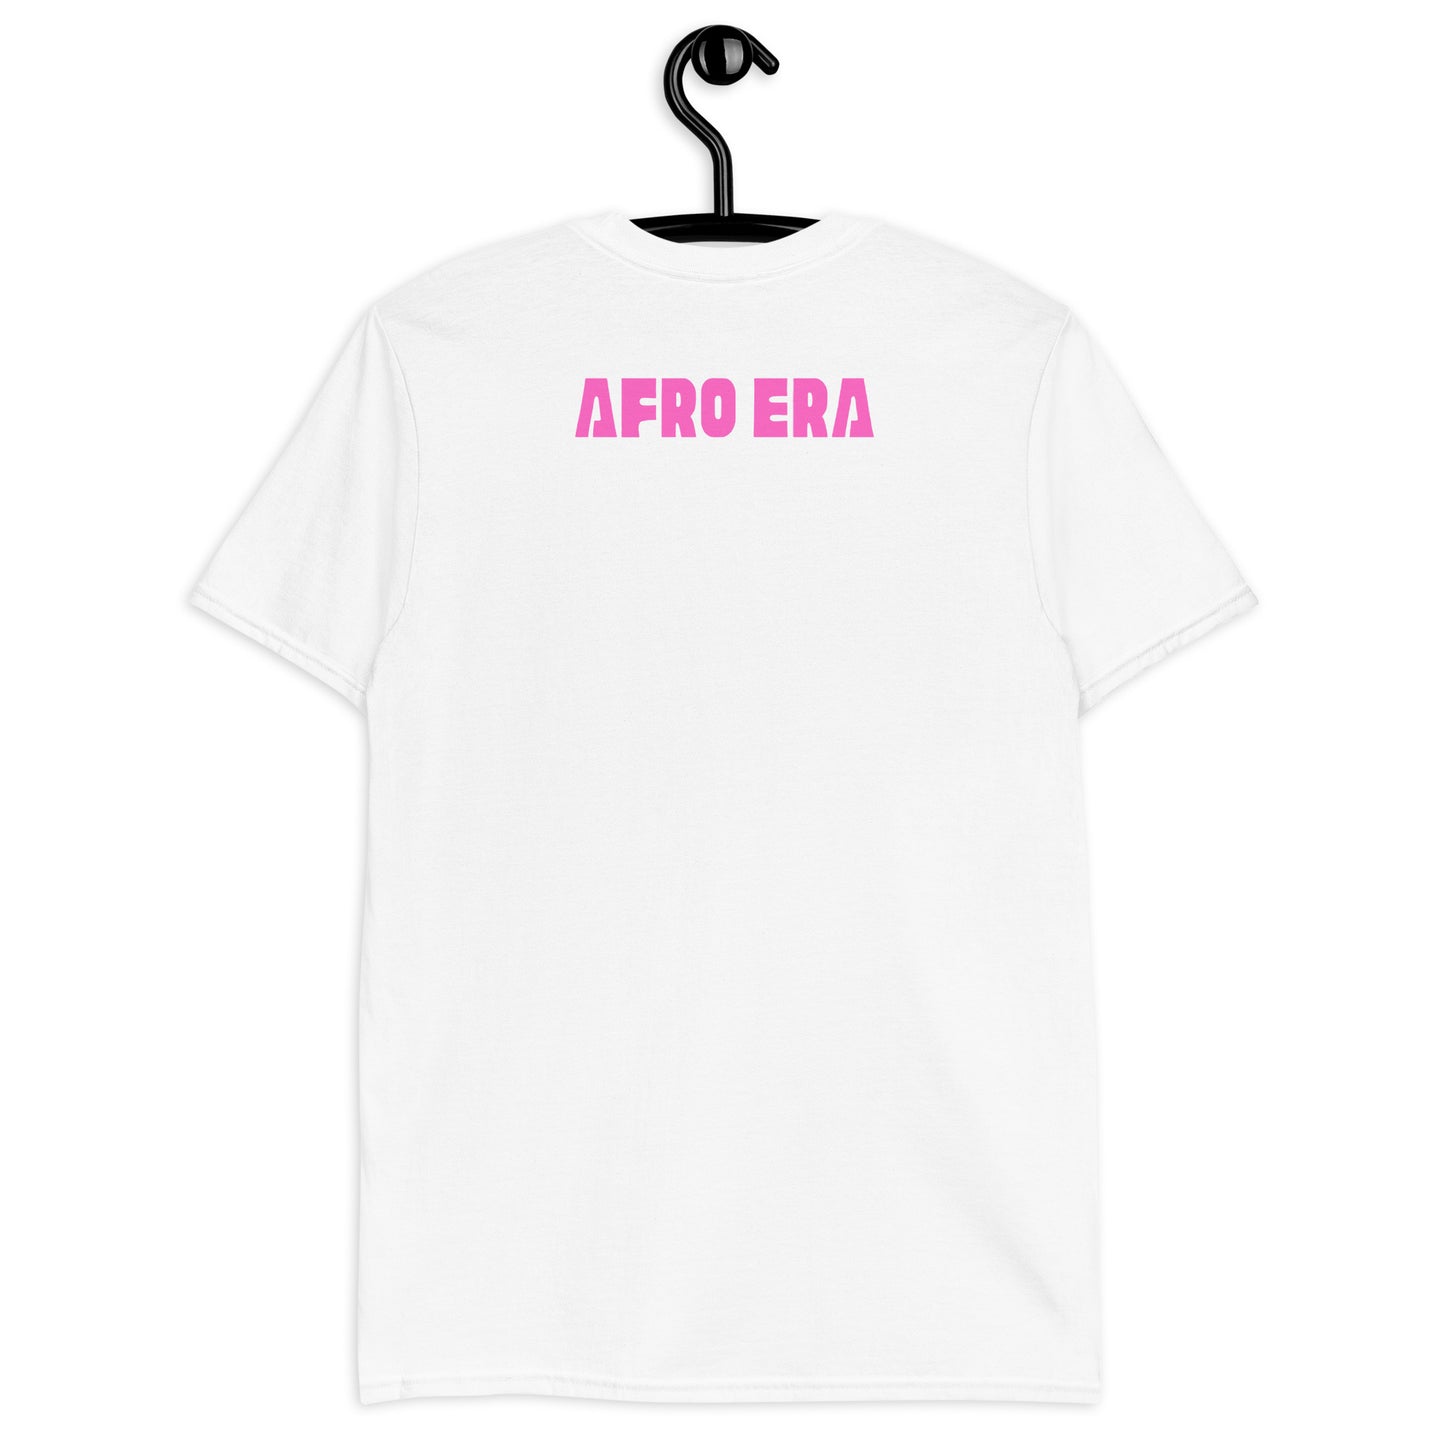 AFRO ERA Short-Sleeve Unisex T-Shirt